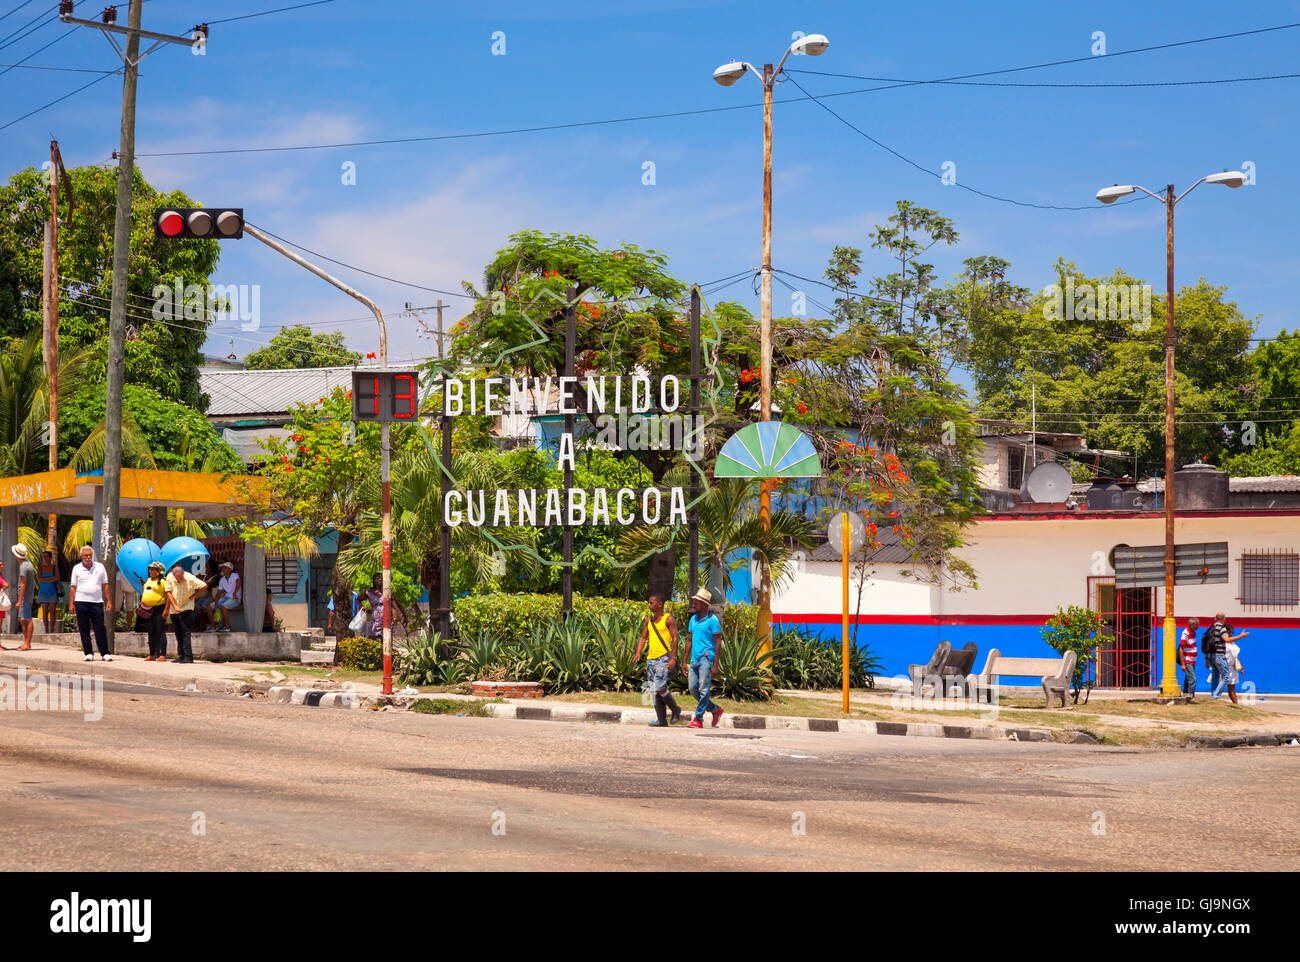 Un signe encourageant pour la municipalité de Guanabacoa, La Havane, Cuba. Banque D'Images